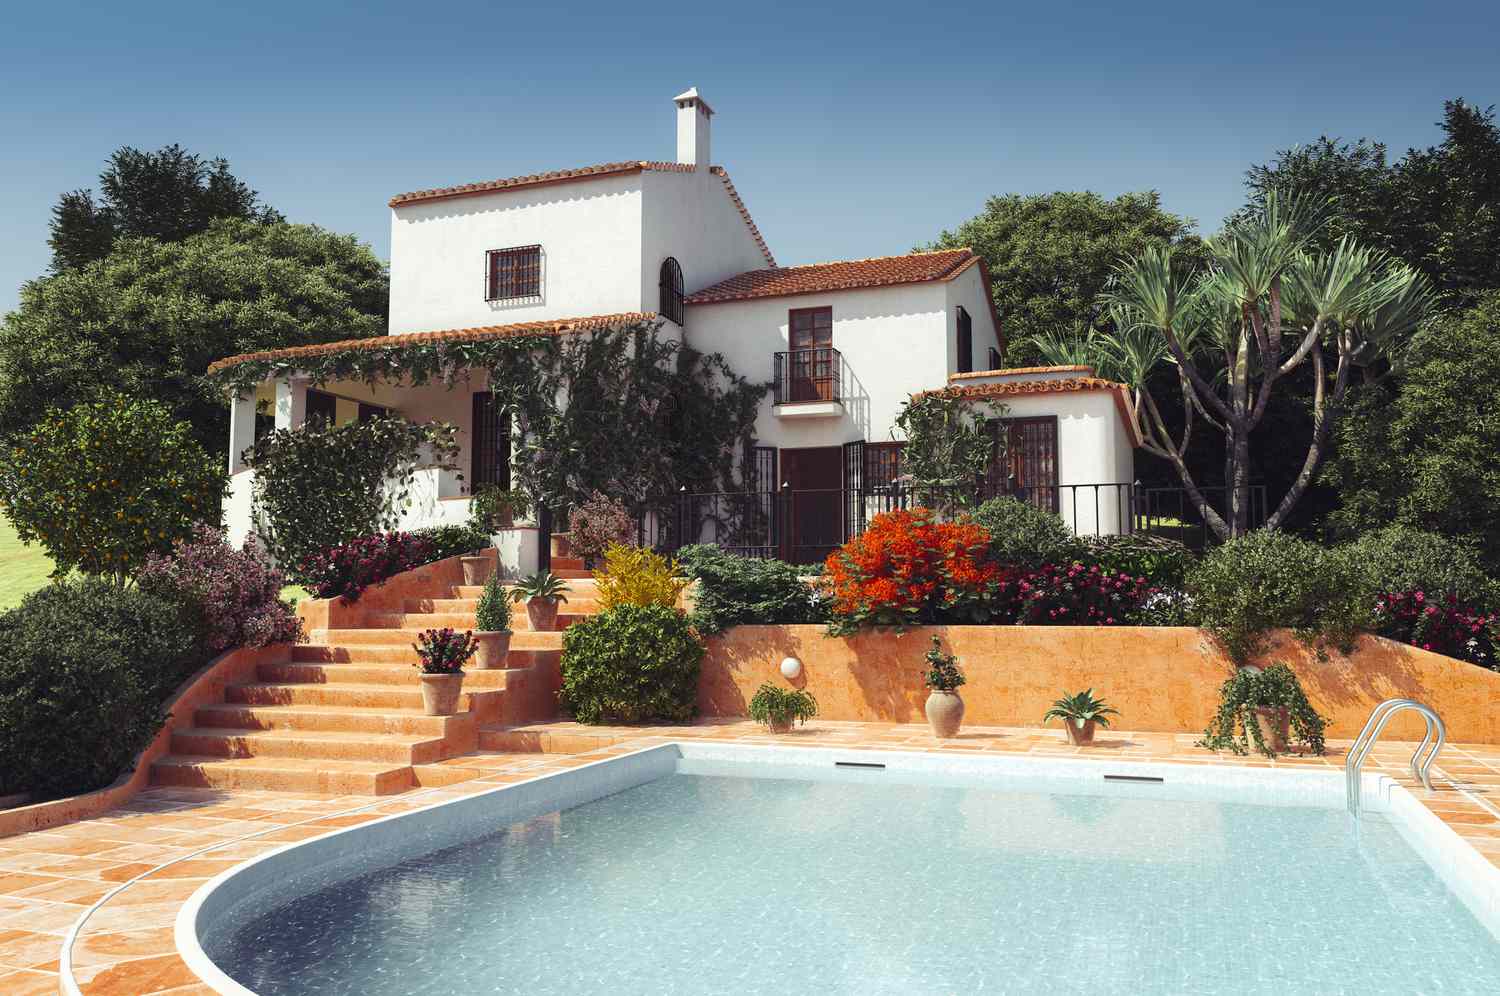 Une villa de style méditerranéen avec une piscine.